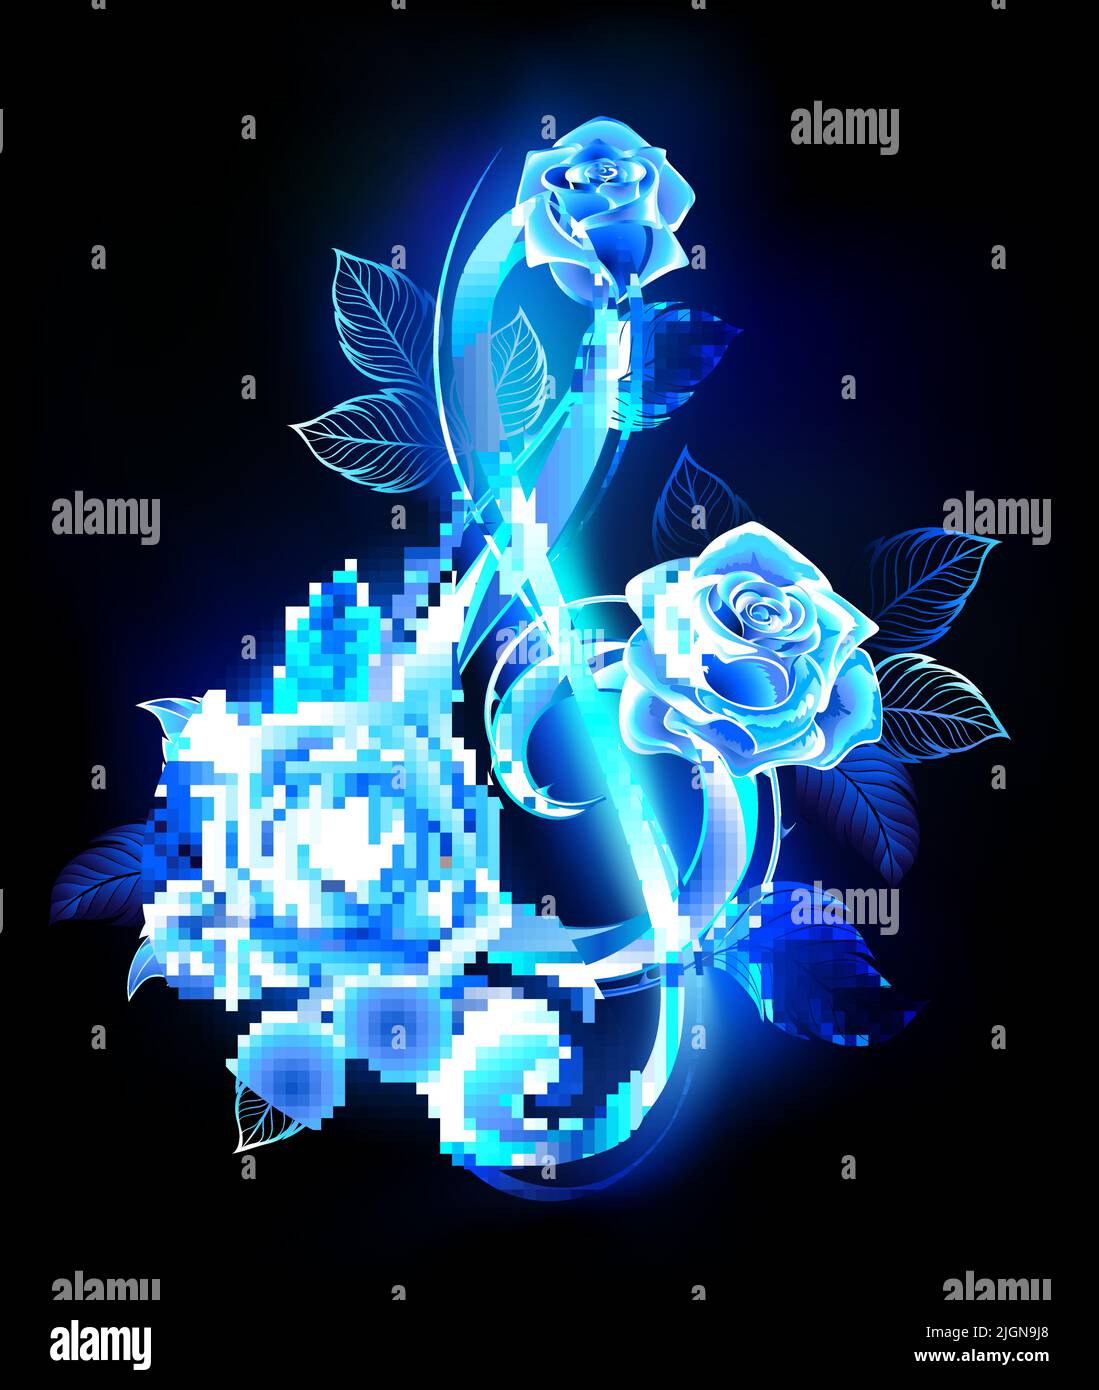 Musica blu fiamma acroble clef decorato con blu fiorente, rose incandescenti su sfondo nero. Illustrazione Vettoriale